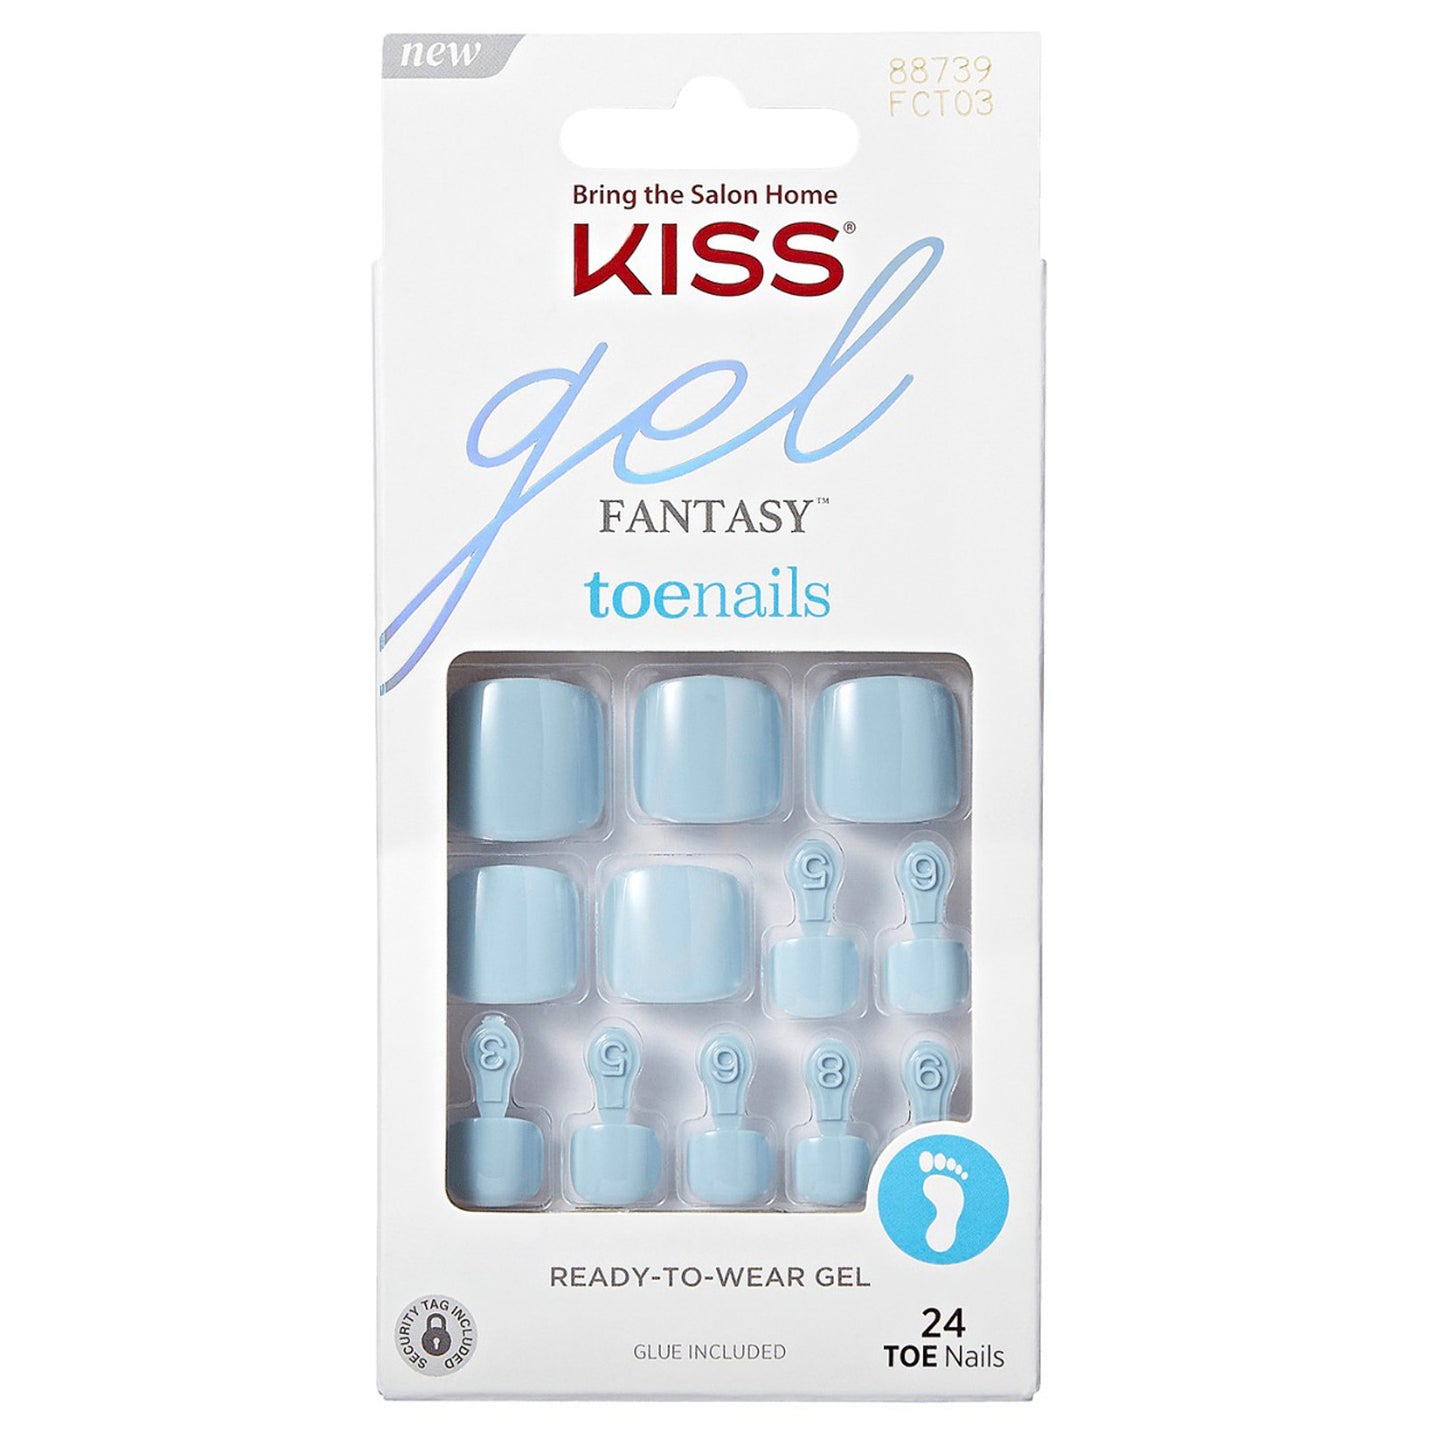 (D) KISS Gel Fantasy Toenails